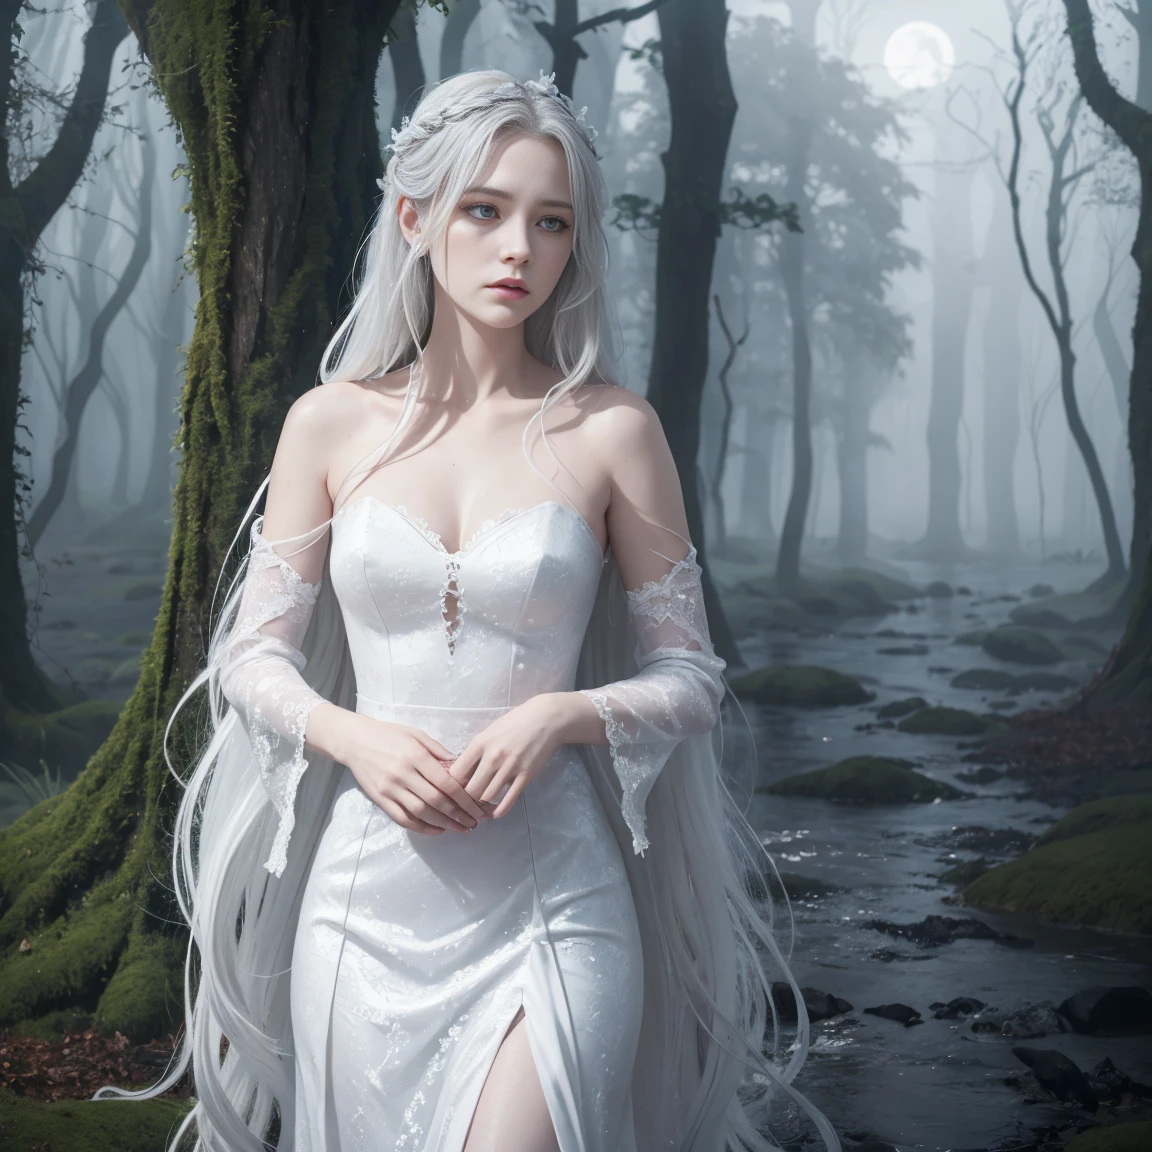 Une représentation d&#39;une Banshee, l&#39;esprit irlandais, avec de longs cheveux argentés et une expression triste. Elle porte une robe blanche fluide et se détache sur un fond brumeux., toile de fond étrange d&#39;une forêt au clair de lune ou d&#39;un ancien château.
